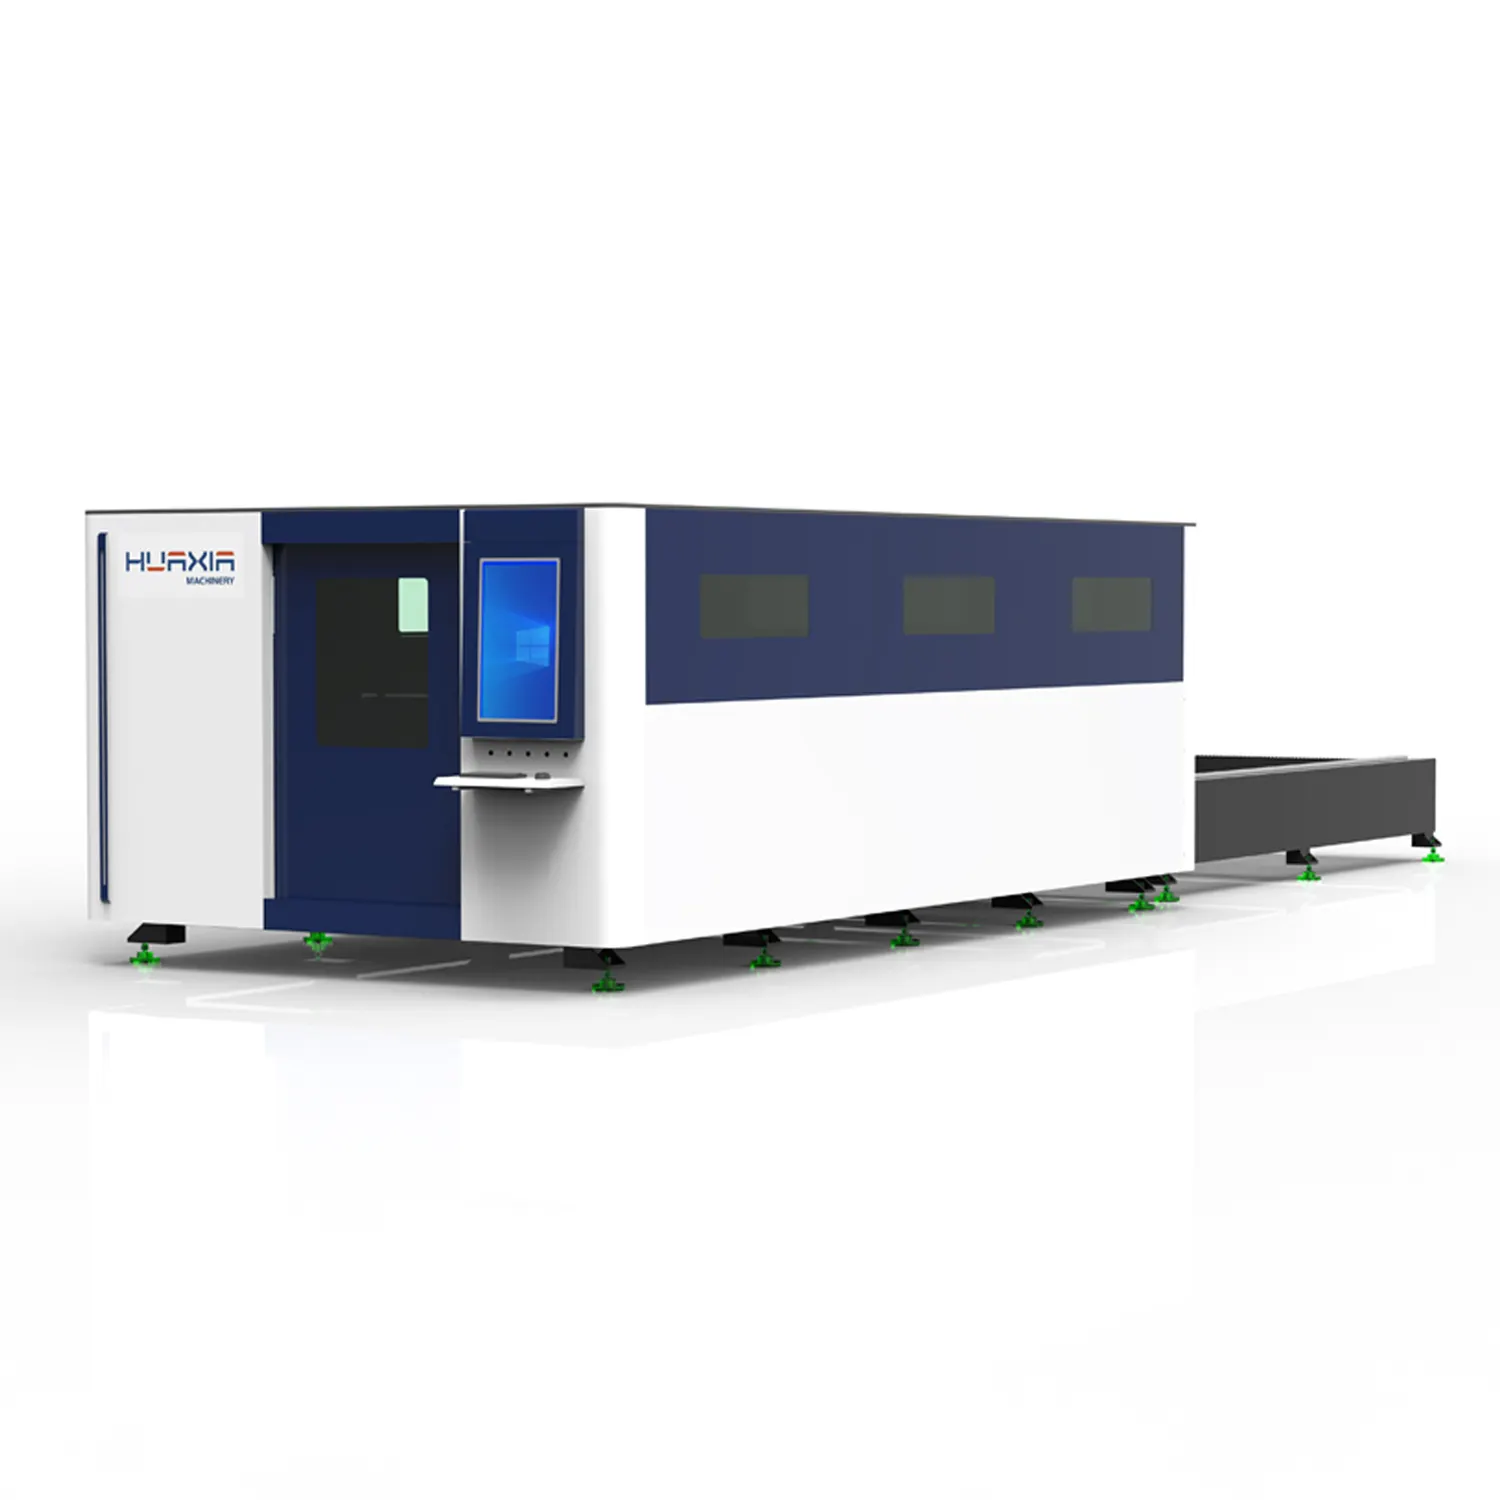 Máquina de corte a laser para metal, plataforma de operação de alta produtividade e alta segurança, totalmente fechada, com alta capacidade de troca